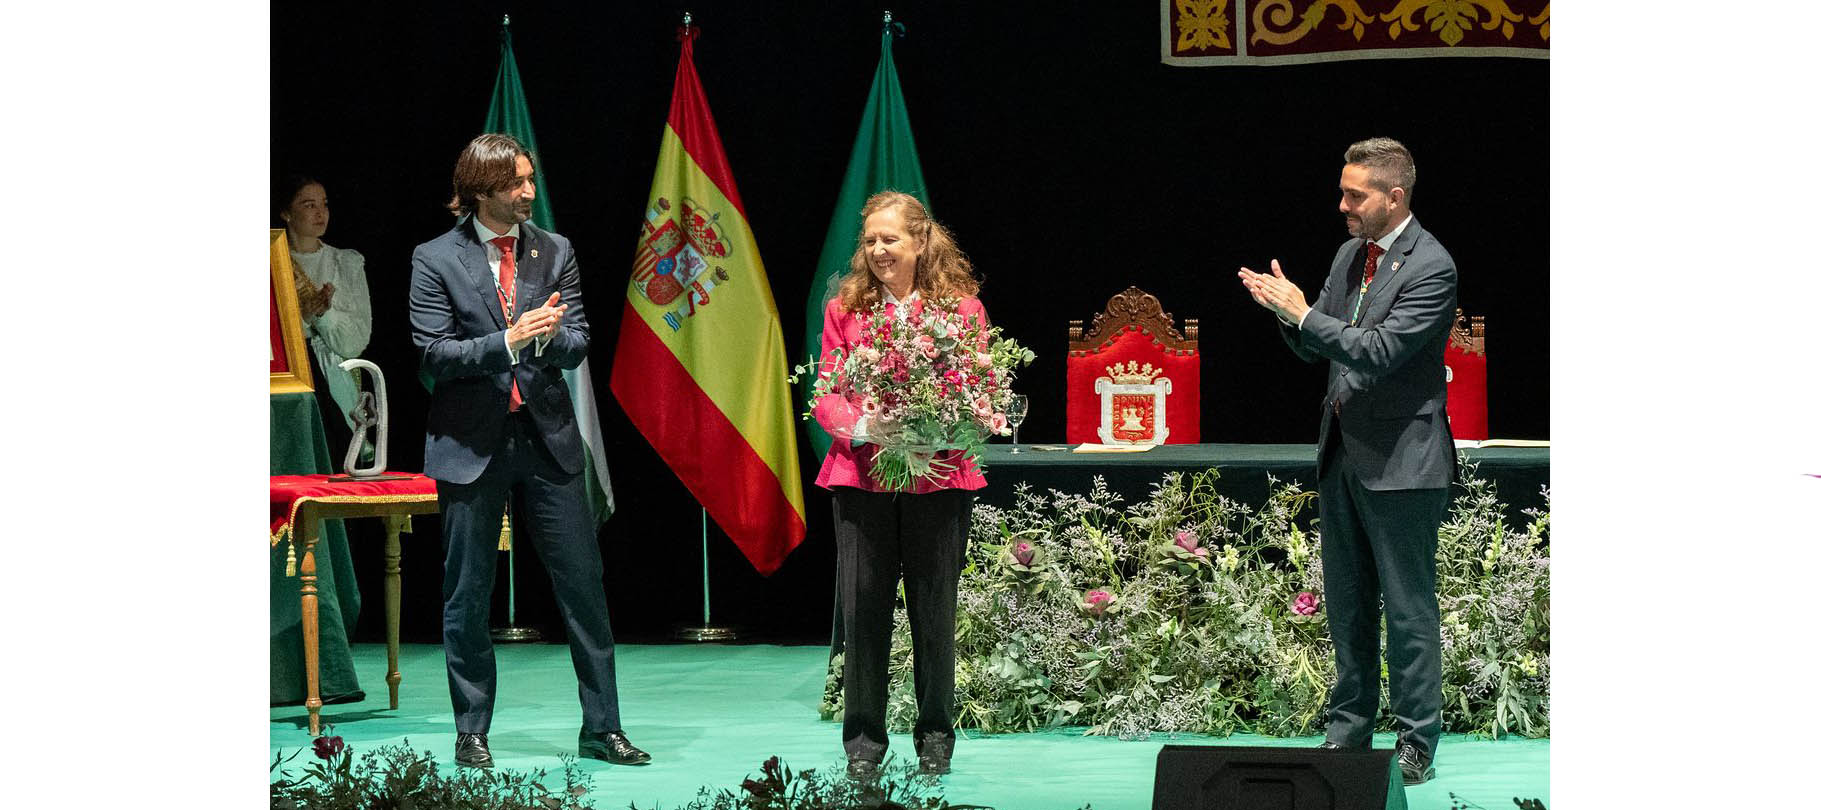 Gloria Ángeles Franco, Catedrática de Historia Moderna de la UCM, recibe el Premio Ciudad de Vejer 2023